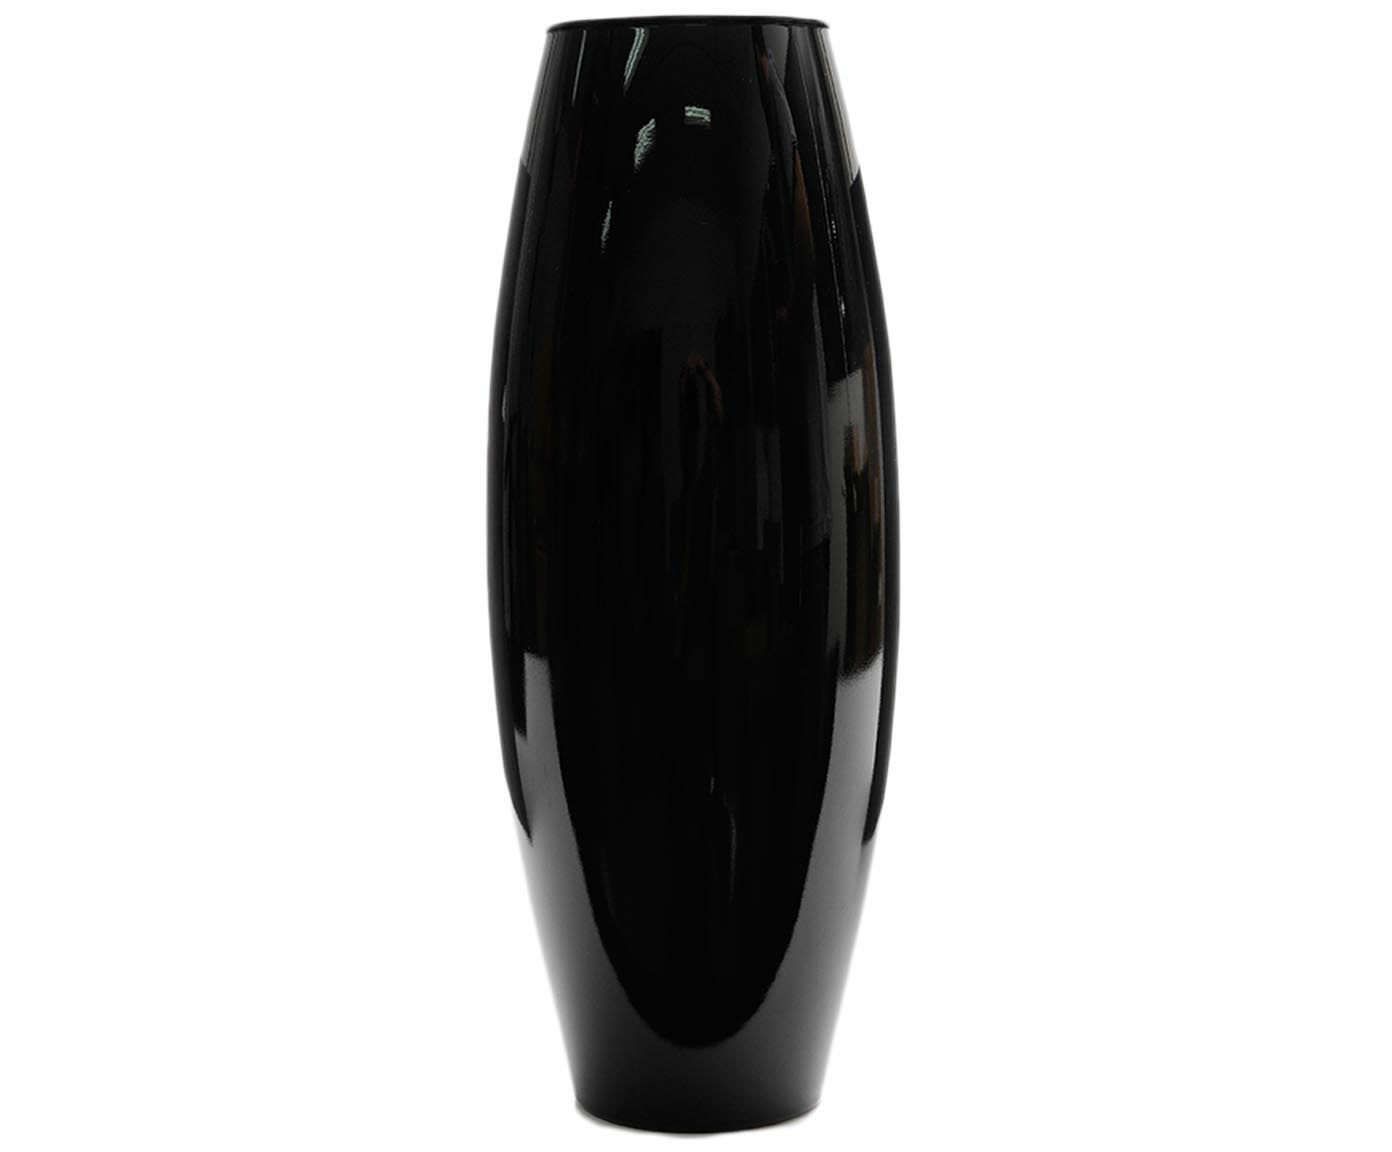 Vaso odeth - 38cm | Westwing.com.br